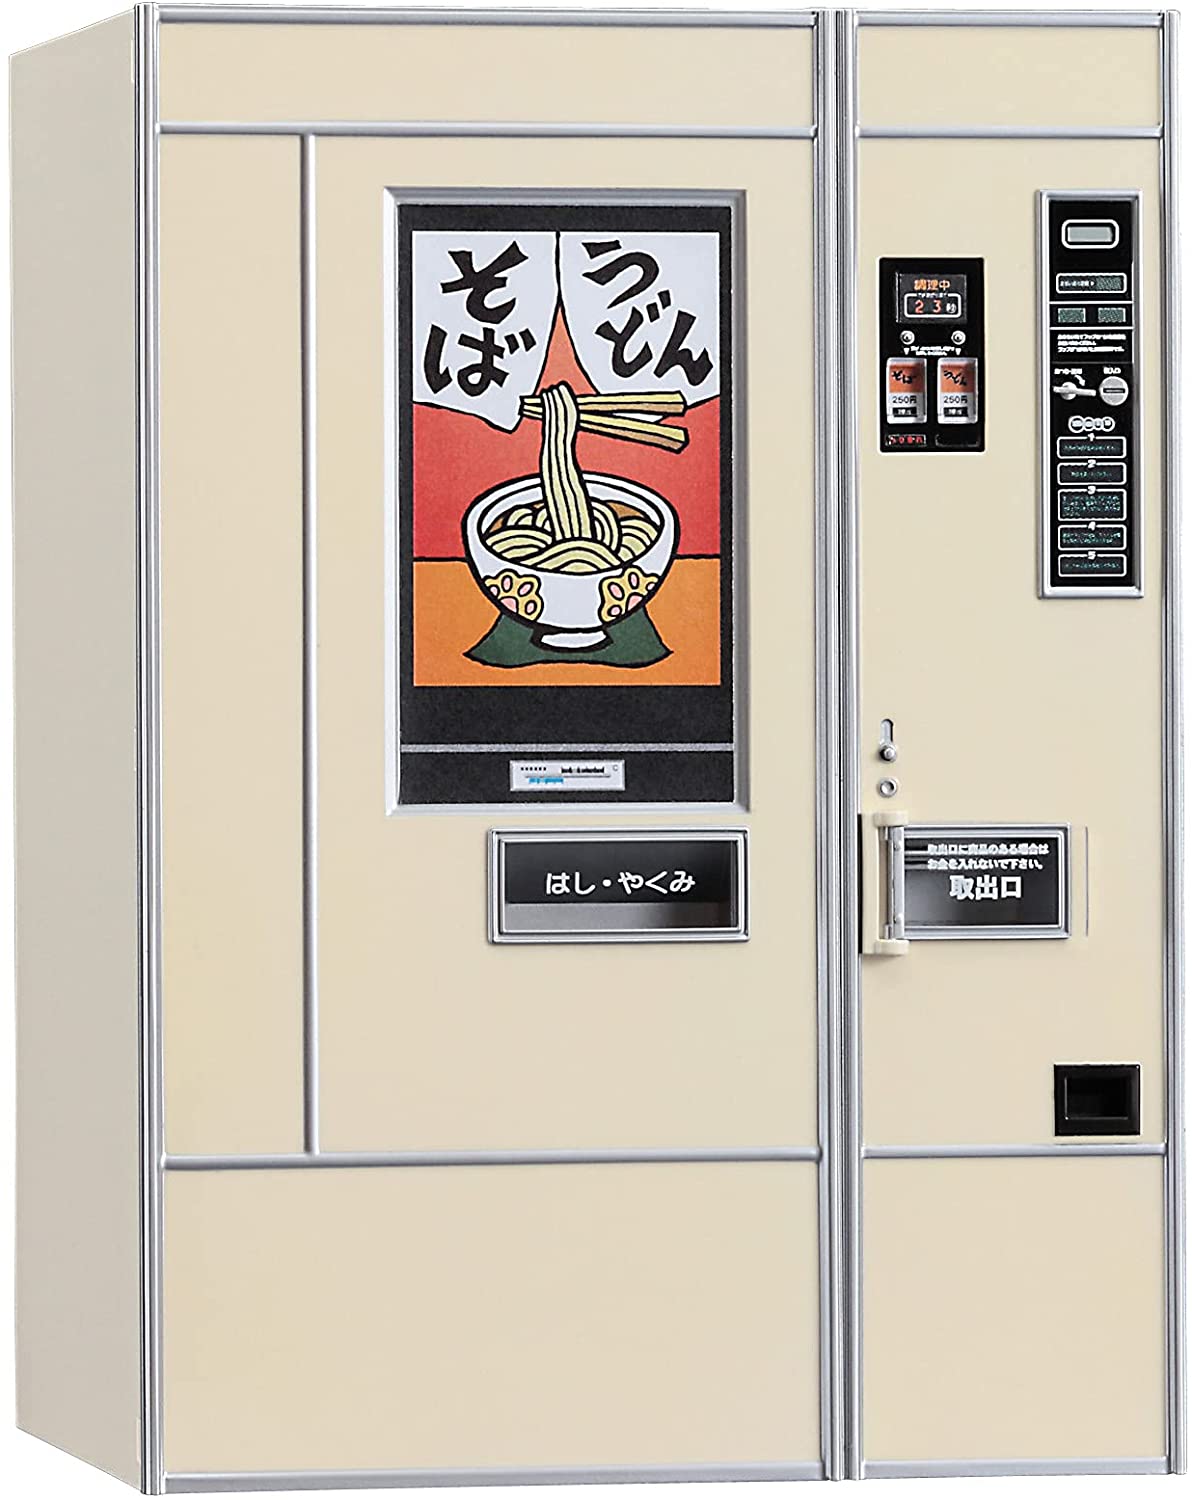 1/12 Retrospectively Vending Machine (Udon Noodle